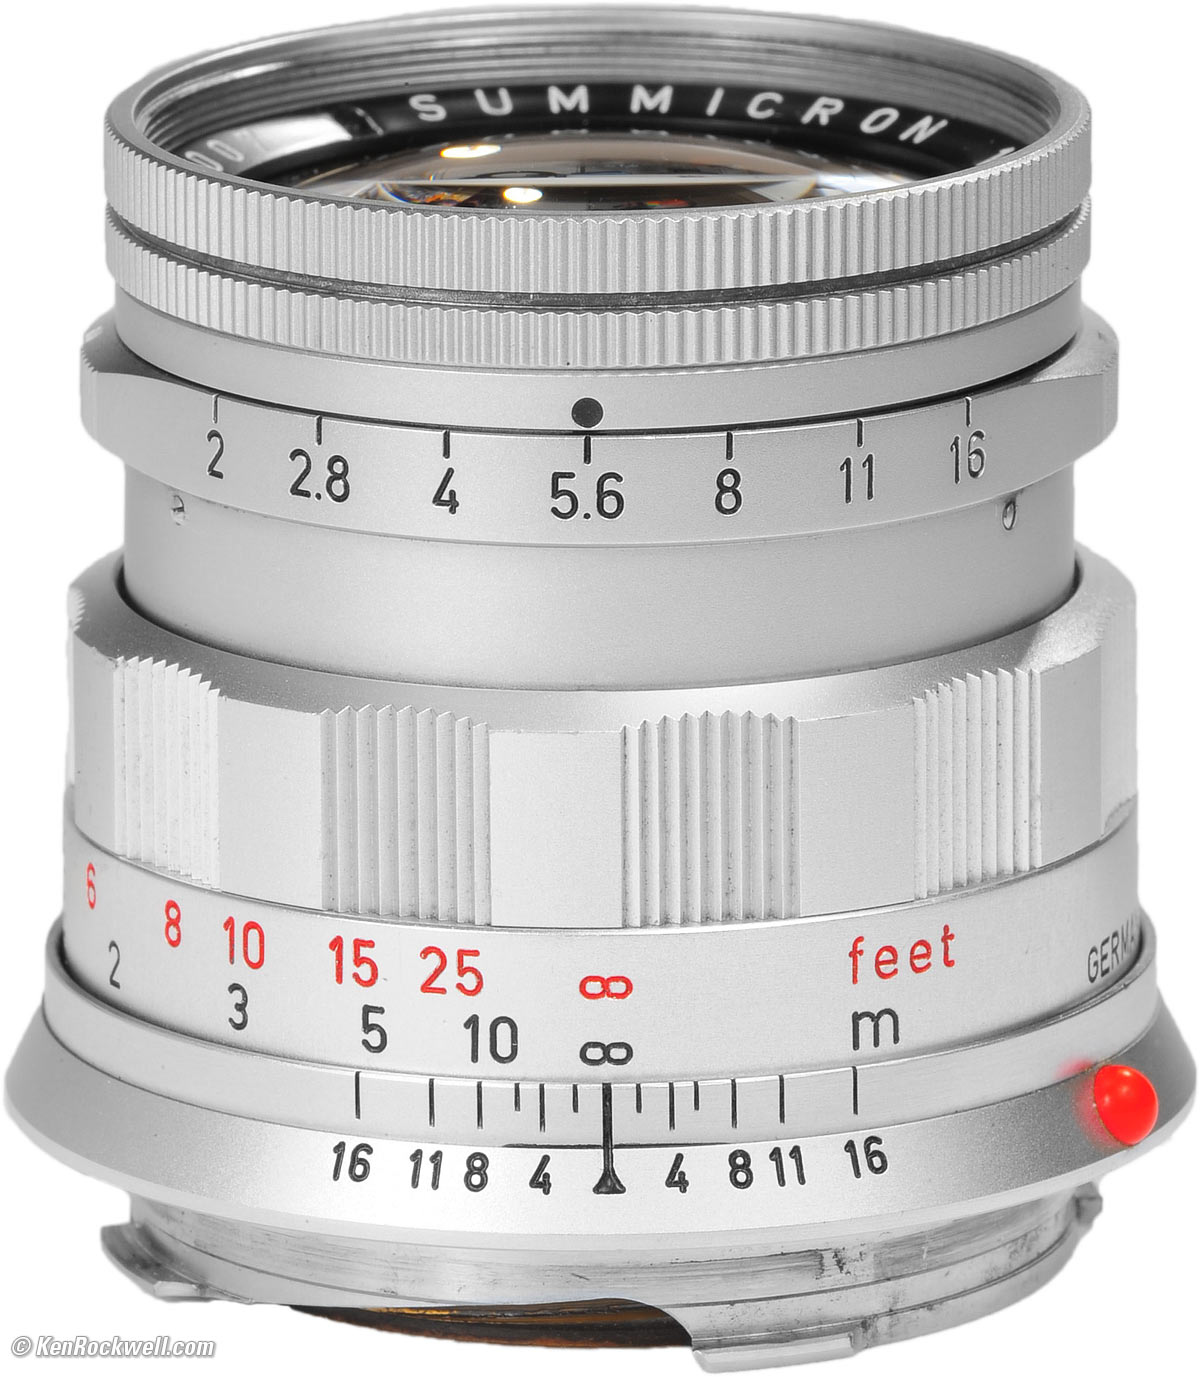 ライカ ズミクロン50mm f2.0 Leica summicron 2nd - レンズ(単焦点)